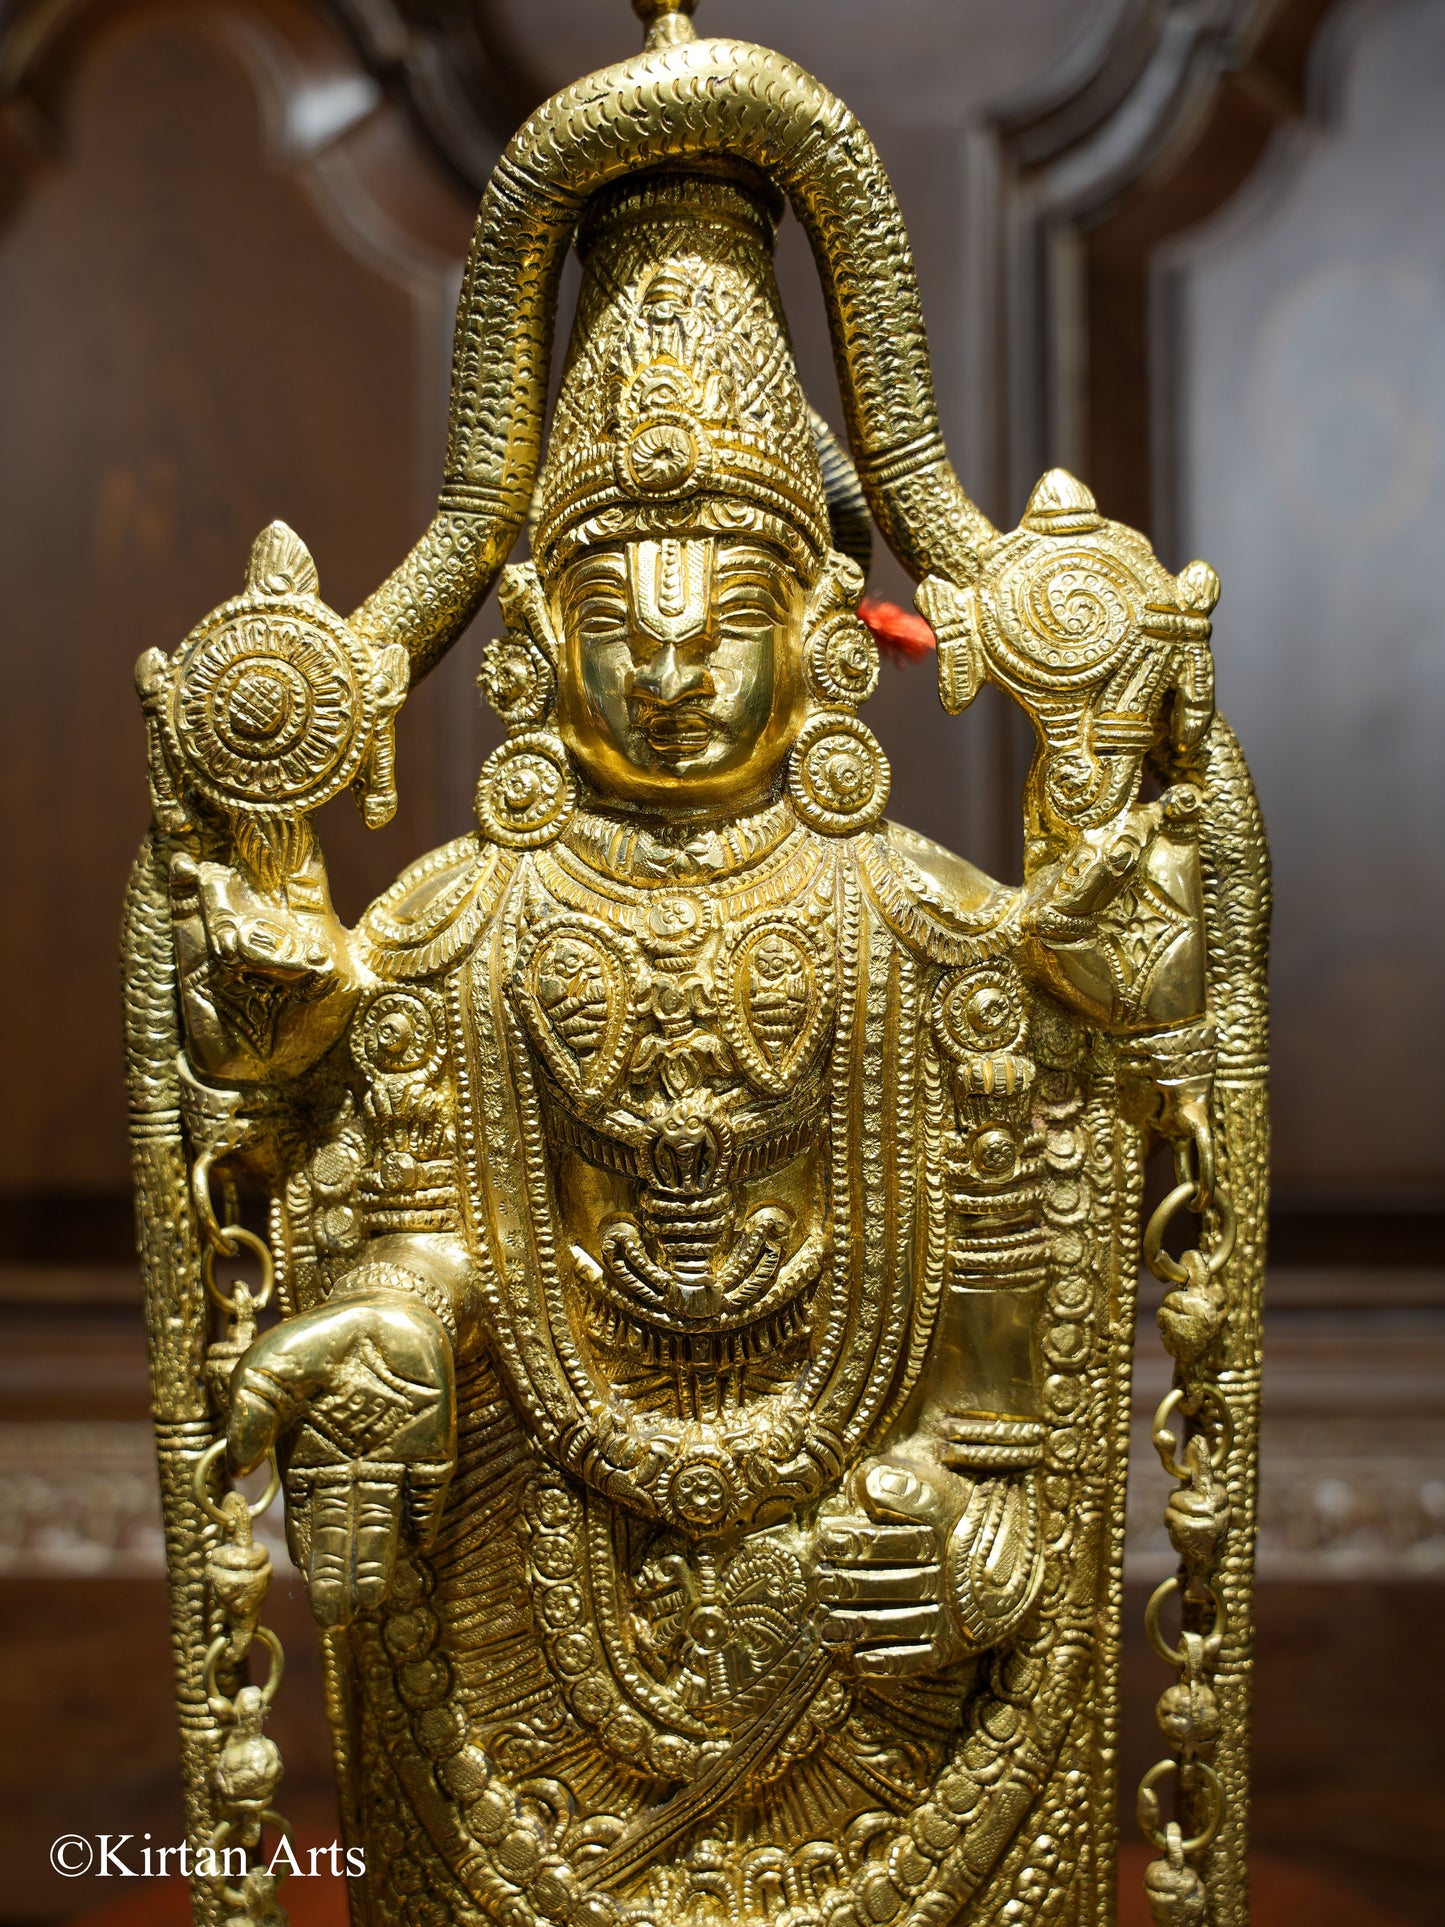 Lord Venkateswara in Brass